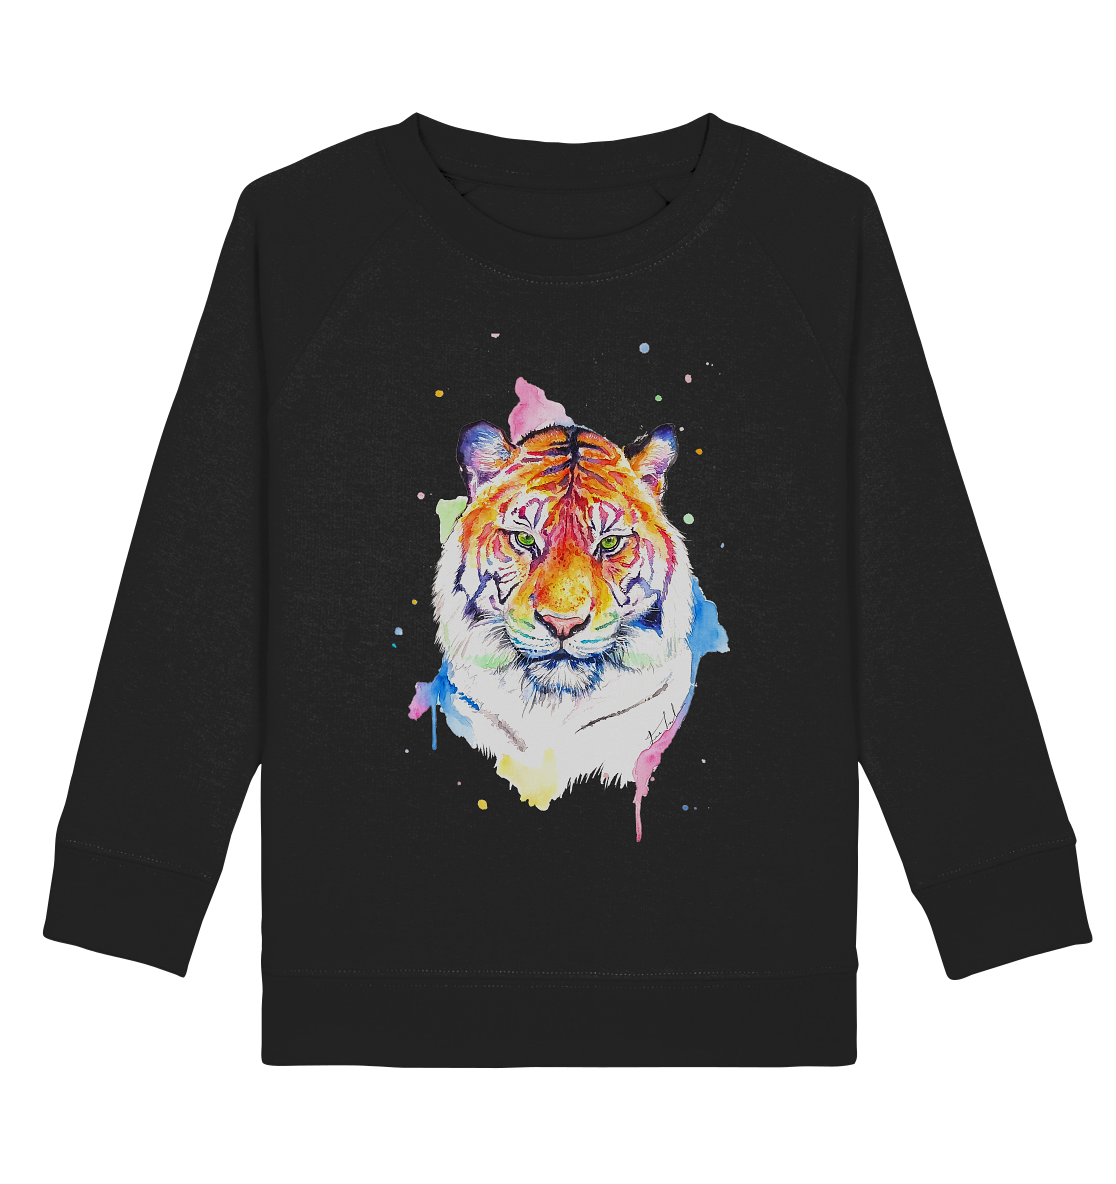 Bunter Tiger - Kids Organic Sweatshirt